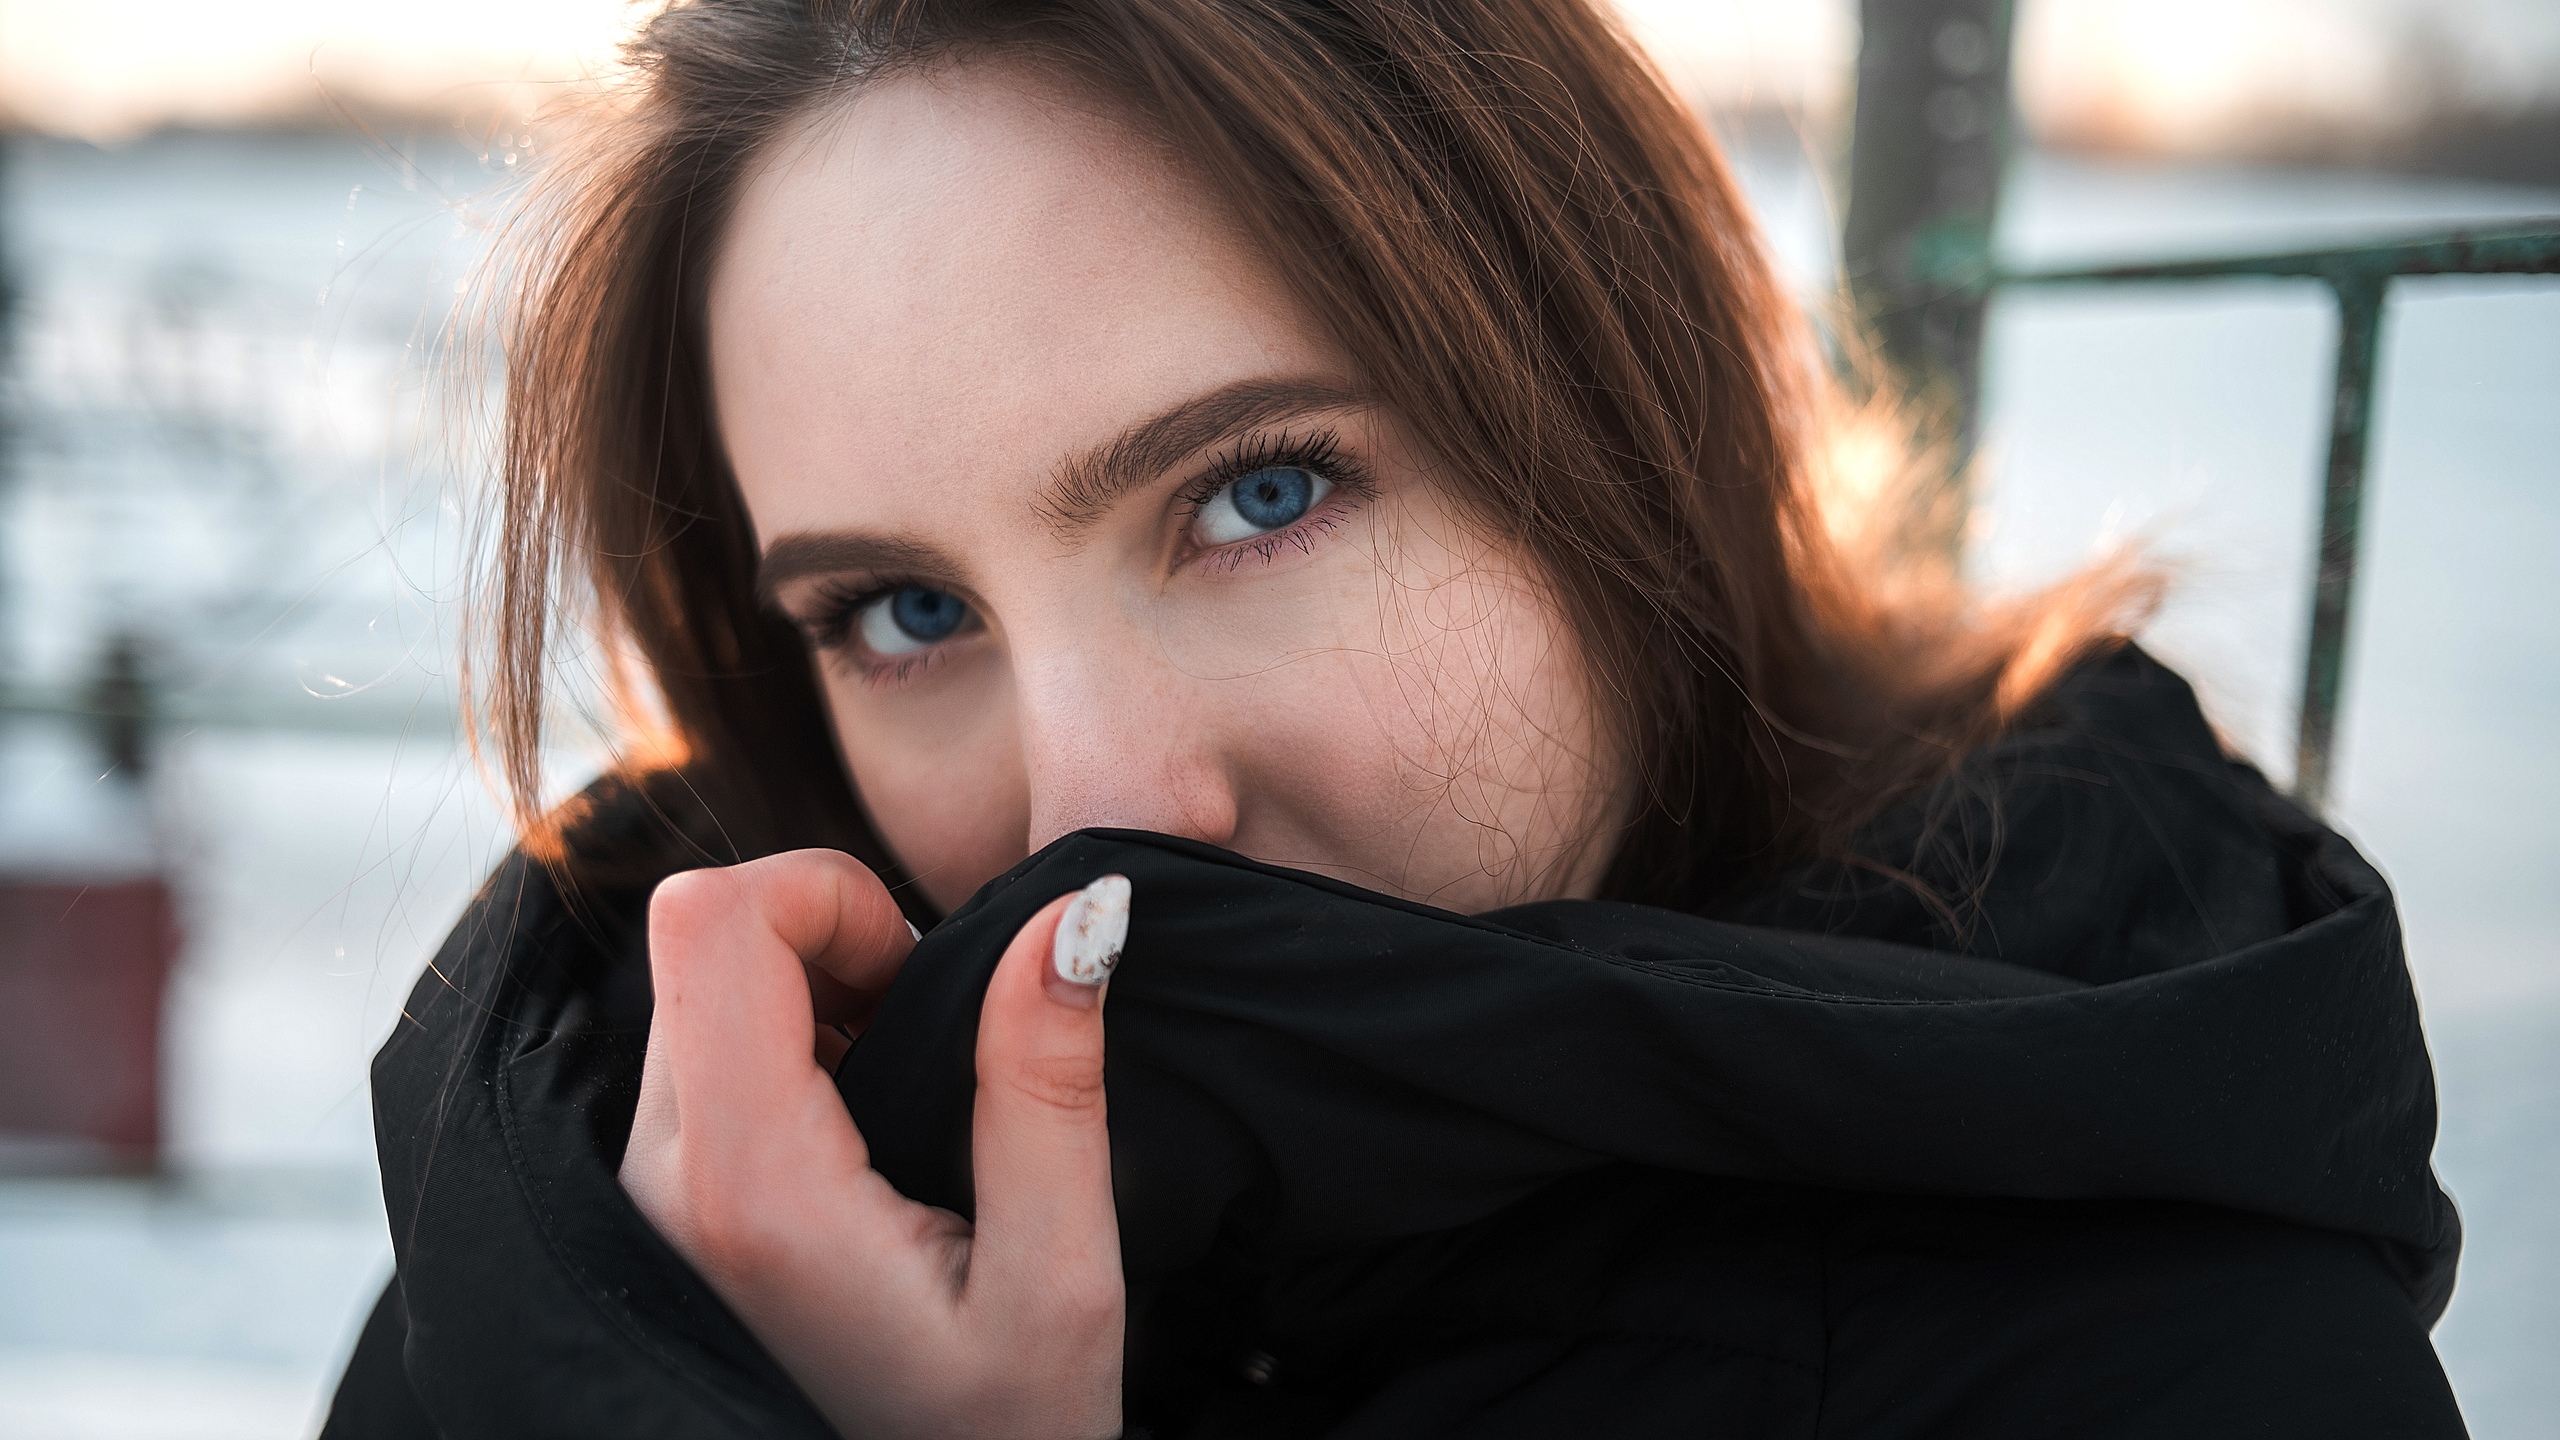 People 2560x1440 women blue eyes portrait face black coat women outdoors snow winter